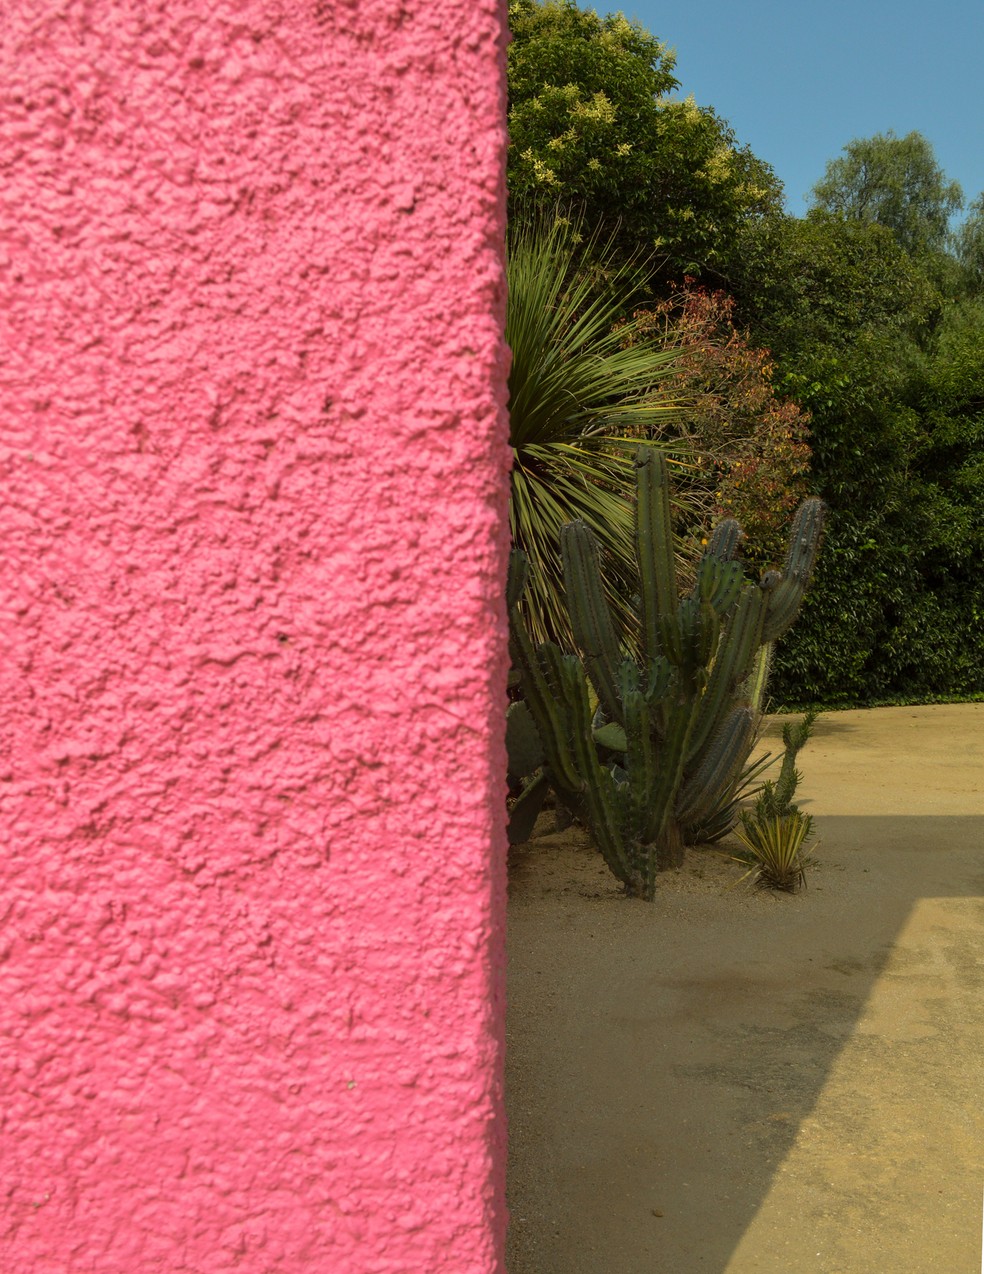 O tom na parede da Cuadra San Cristobal é conhecido como "rosa Barragán" — Foto: Getty Images